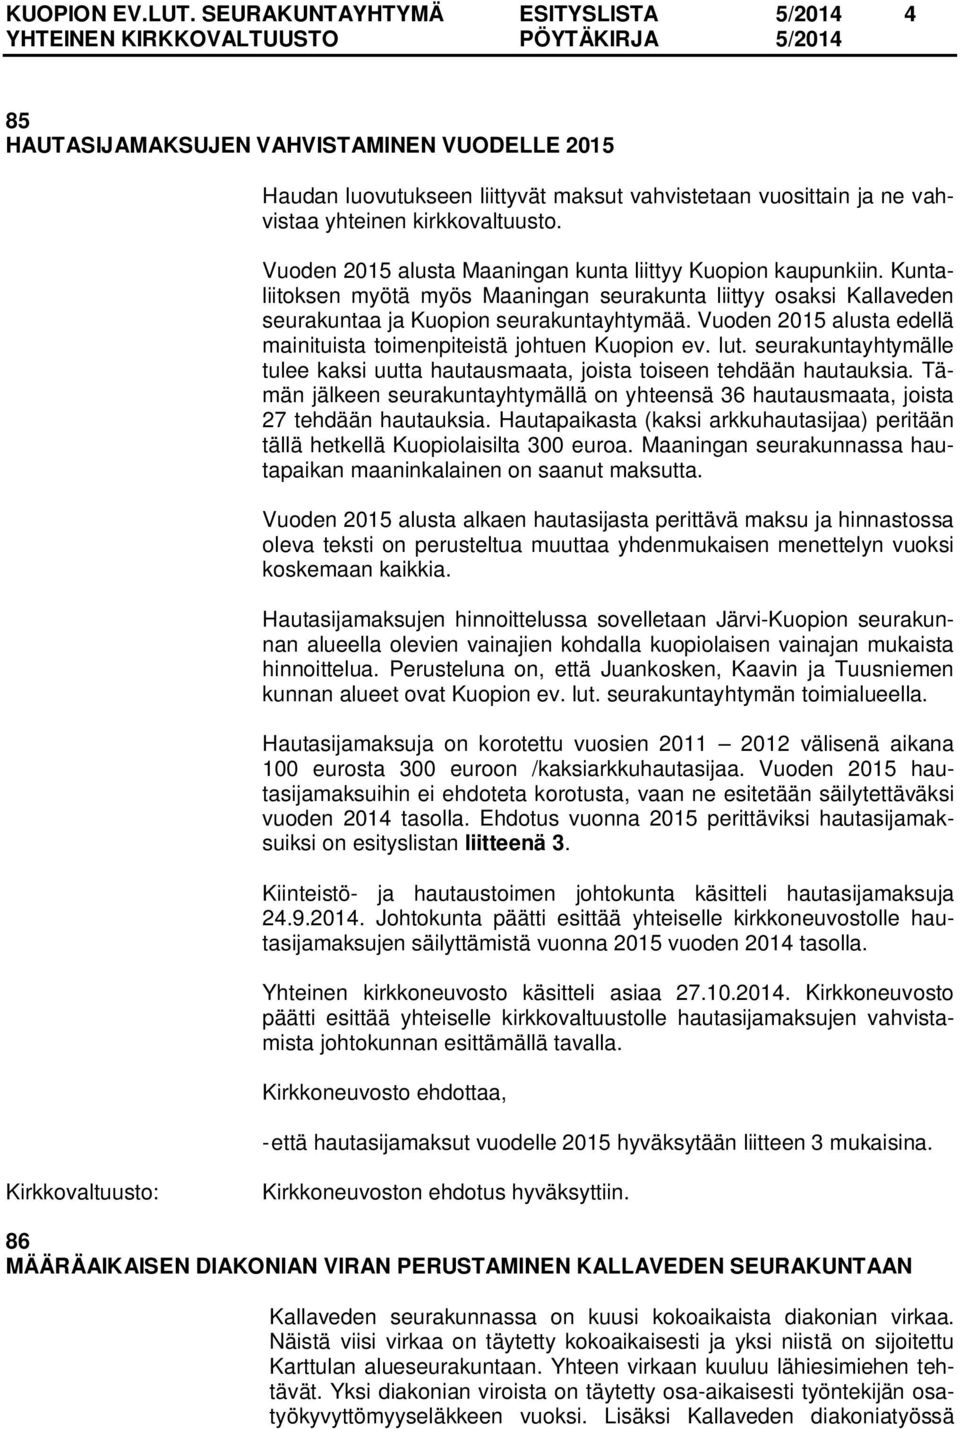 Vuoden 2015 alusta Maaningan kunta liittyy Kuopion kaupunkiin. Kuntaliitoksen myötä myös Maaningan seurakunta liittyy osaksi Kallaveden seurakuntaa ja Kuopion seurakuntayhtymää.